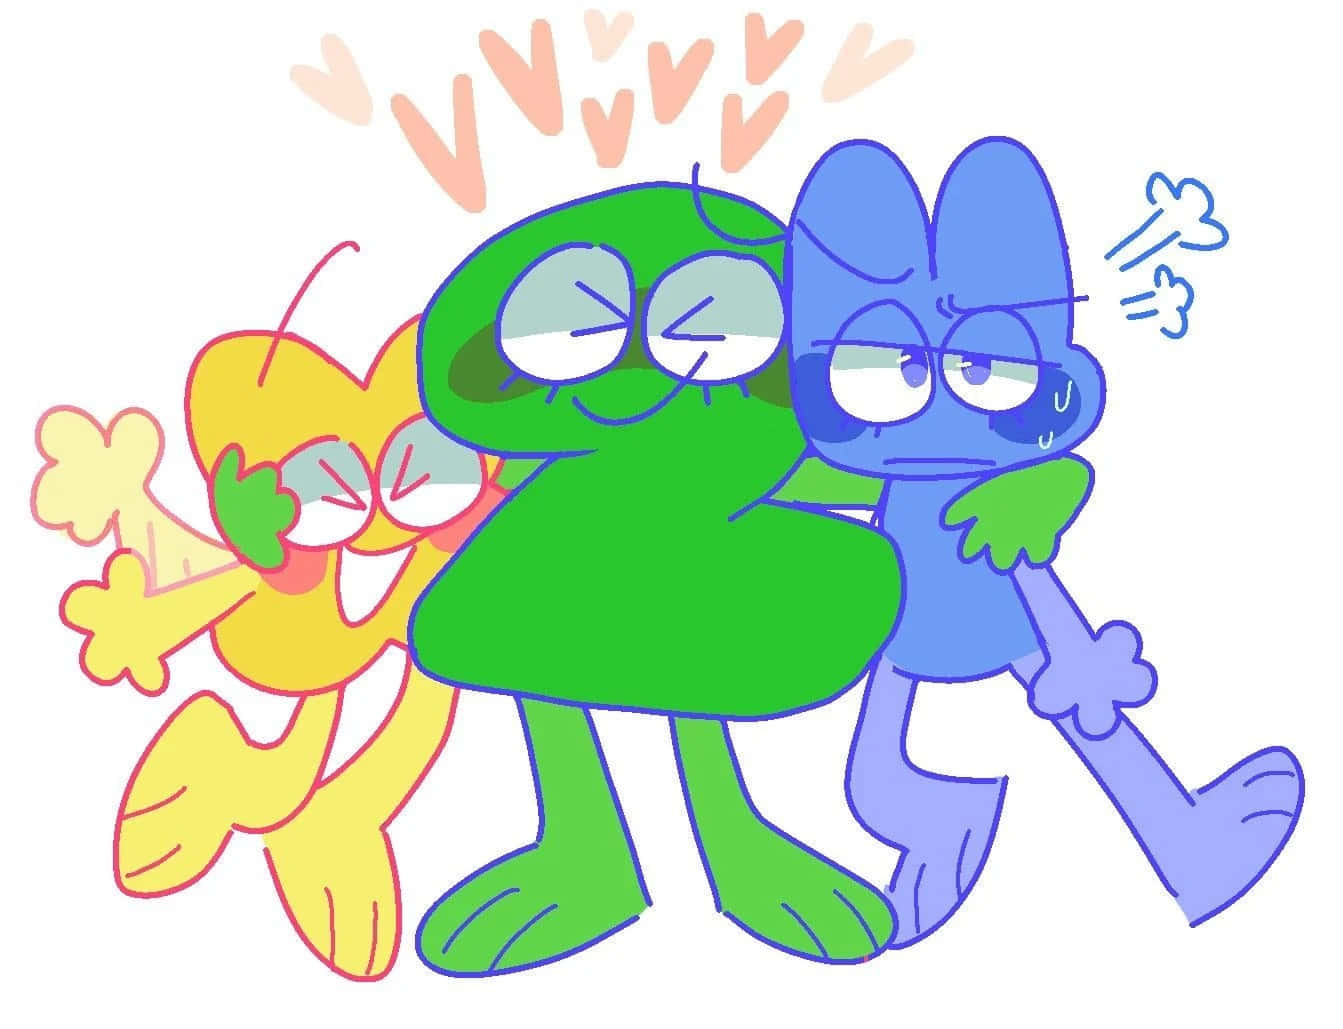 Umdesenho Animado De Três Personagens De Desenho Animado Abraçando-se